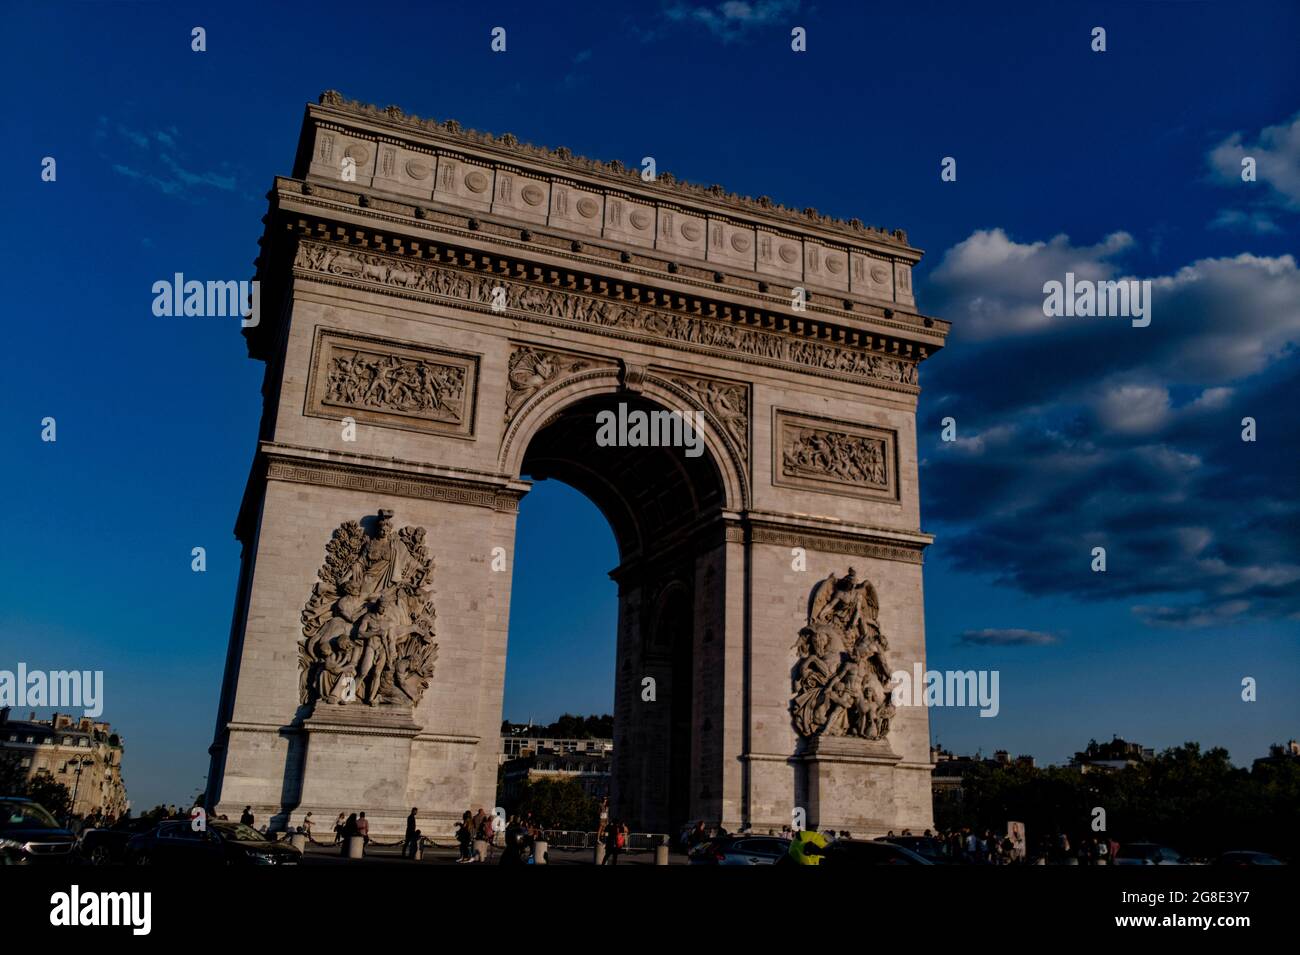 Europe - France, capitale Paris : une vue sur l'Arc de Triomphe n'est pas l'un des monuments commémoratifs les plus connus du monde visités par des millions de peop Banque D'Images